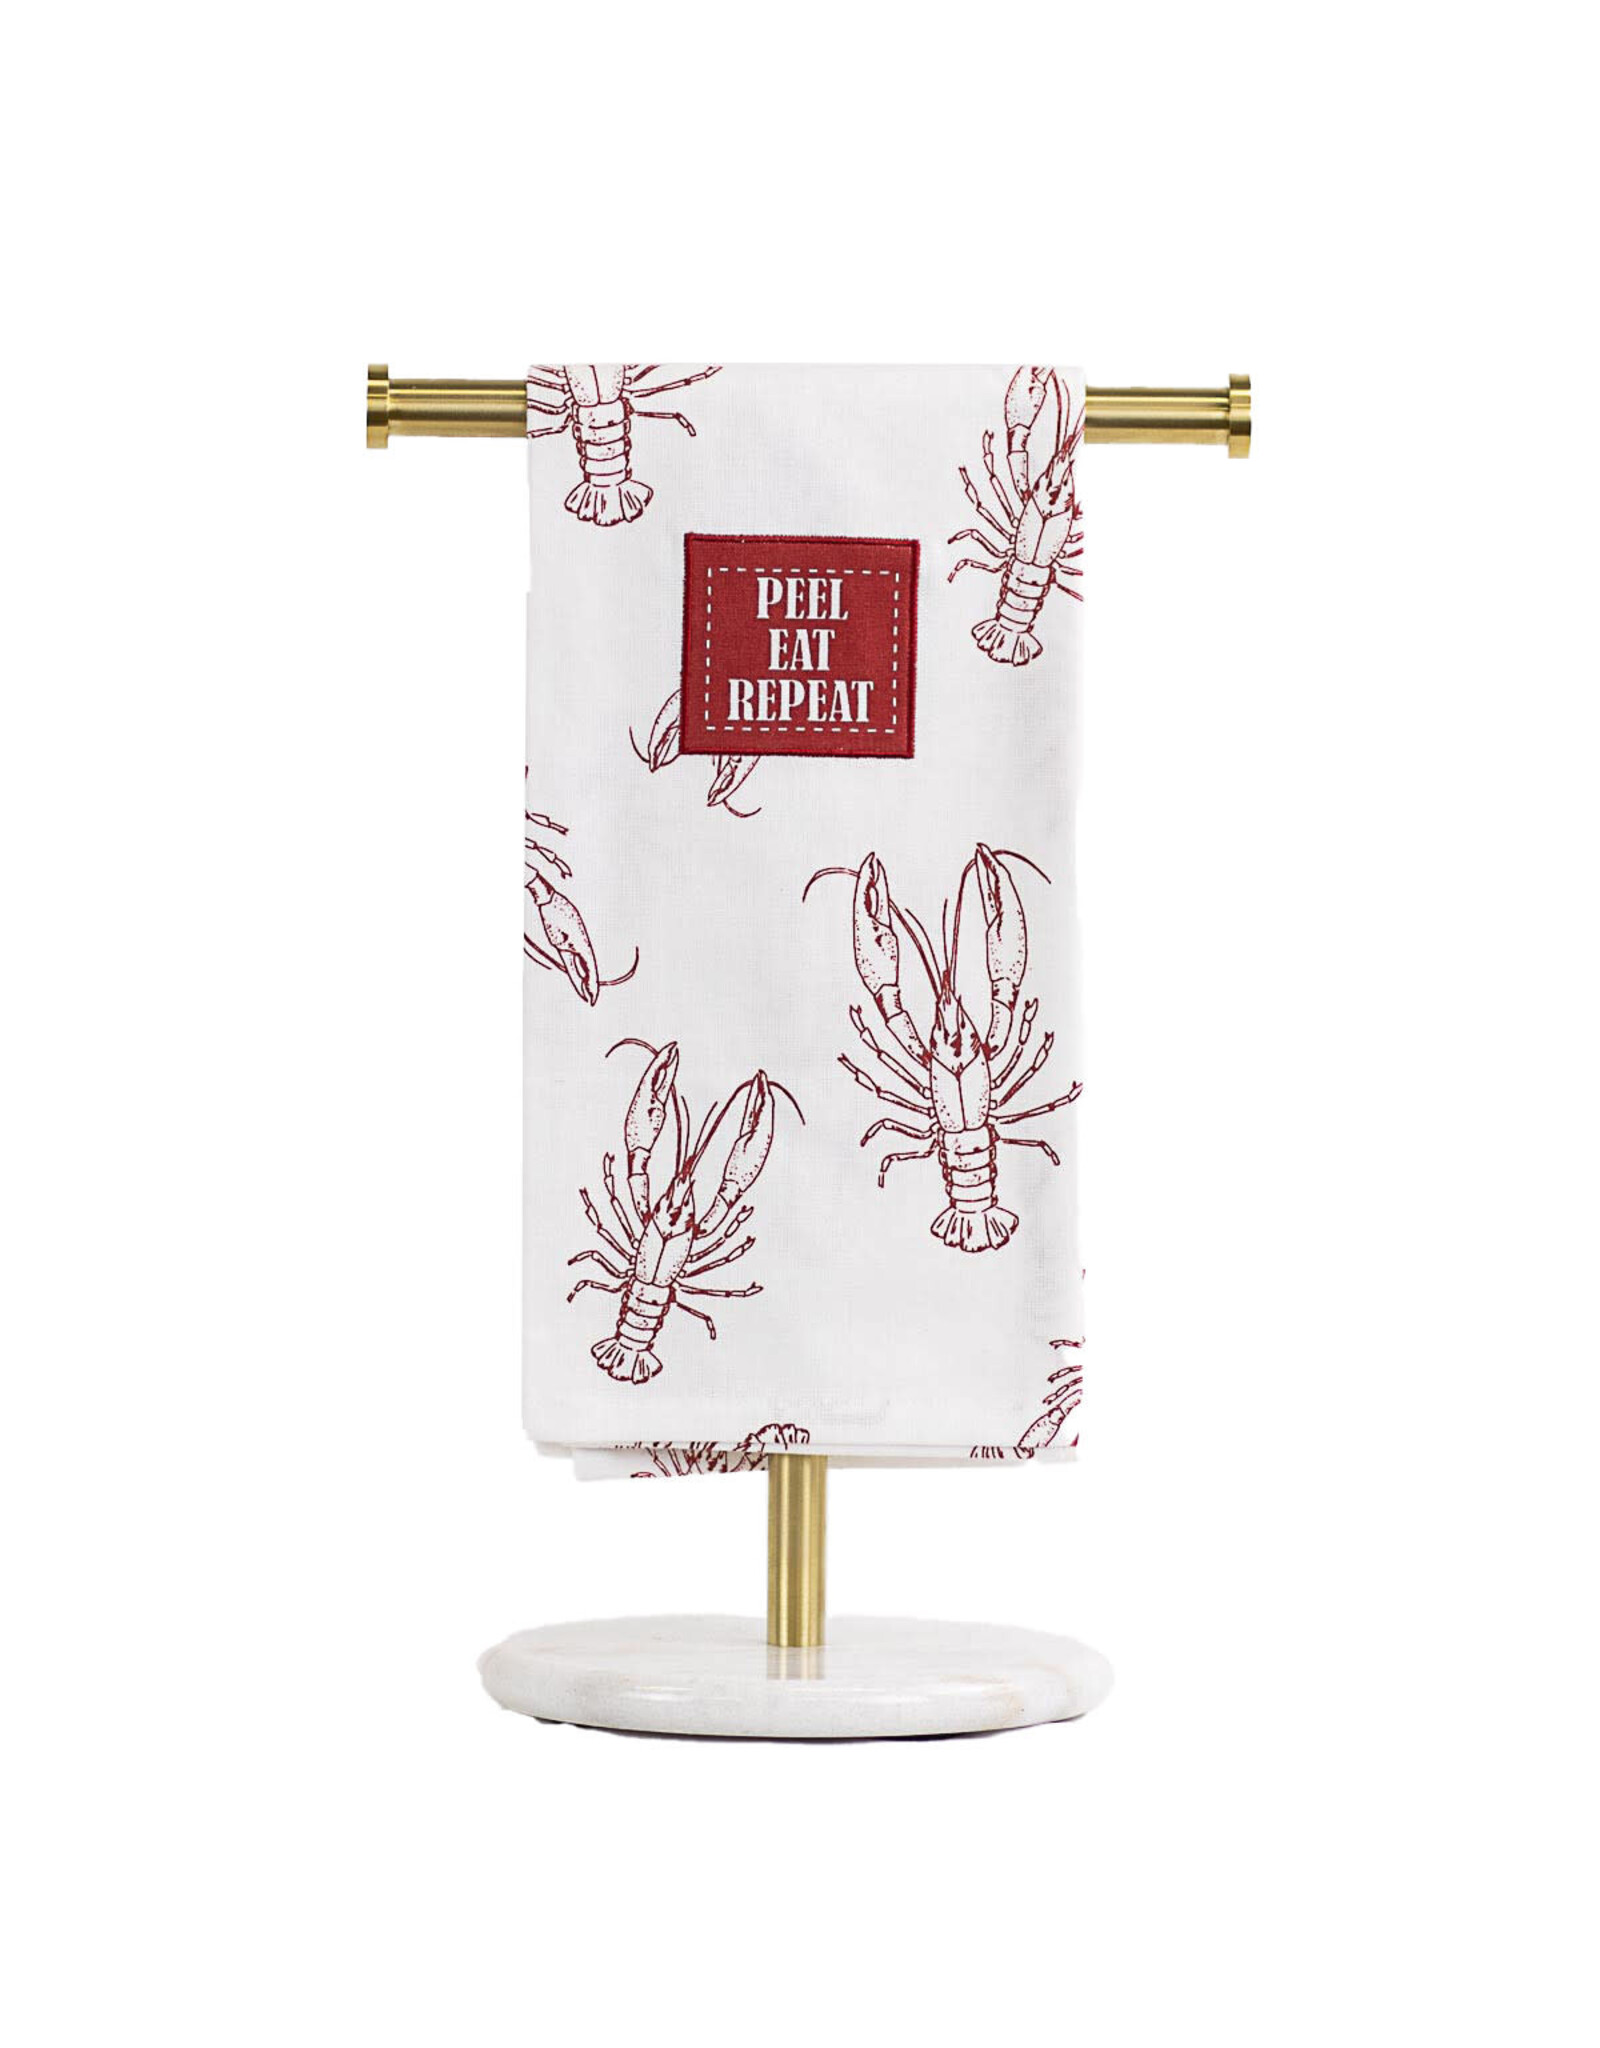 The Royal Standard Peel Eat Repeat Crawfish Hand Towel